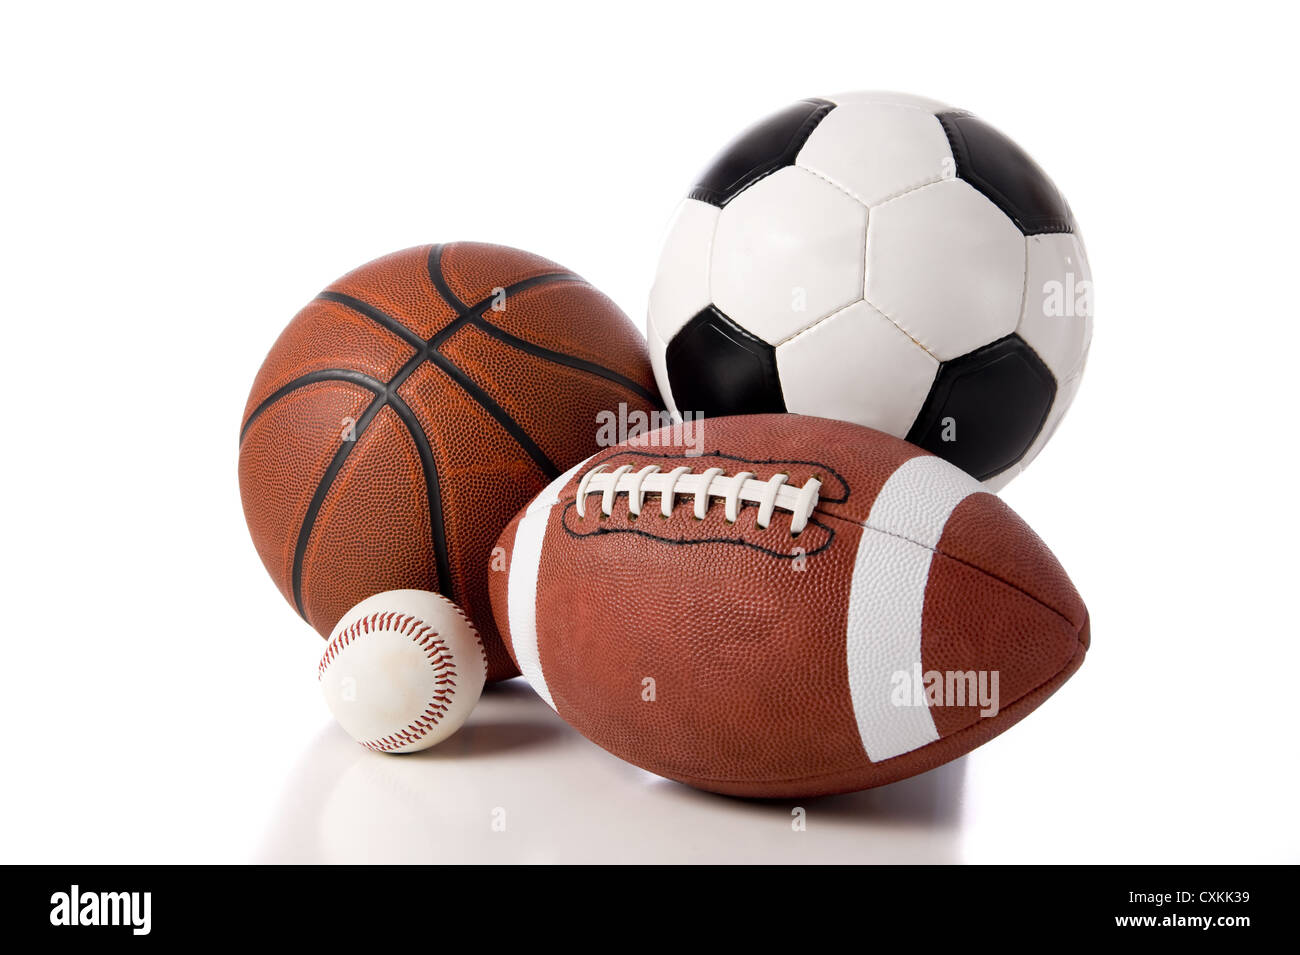 Eine Gruppe von Sportbälle auf weißem Grund, darunter ein Baseball, ein American Football, ein Basketball und Fußball Stockfoto